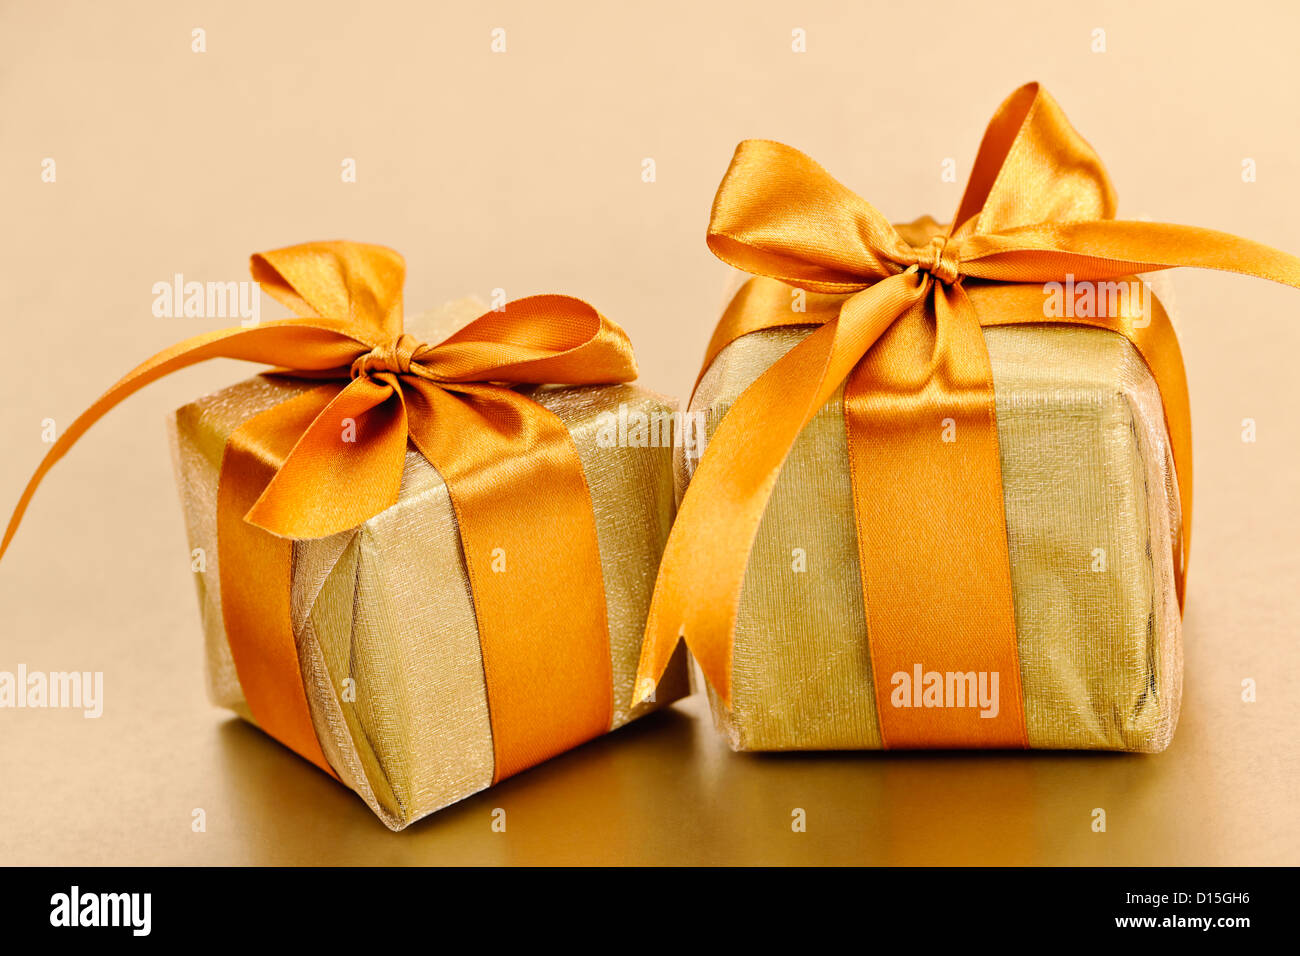 Caja de regalo redonda con lazo y dos cajas de regalo pequeñas